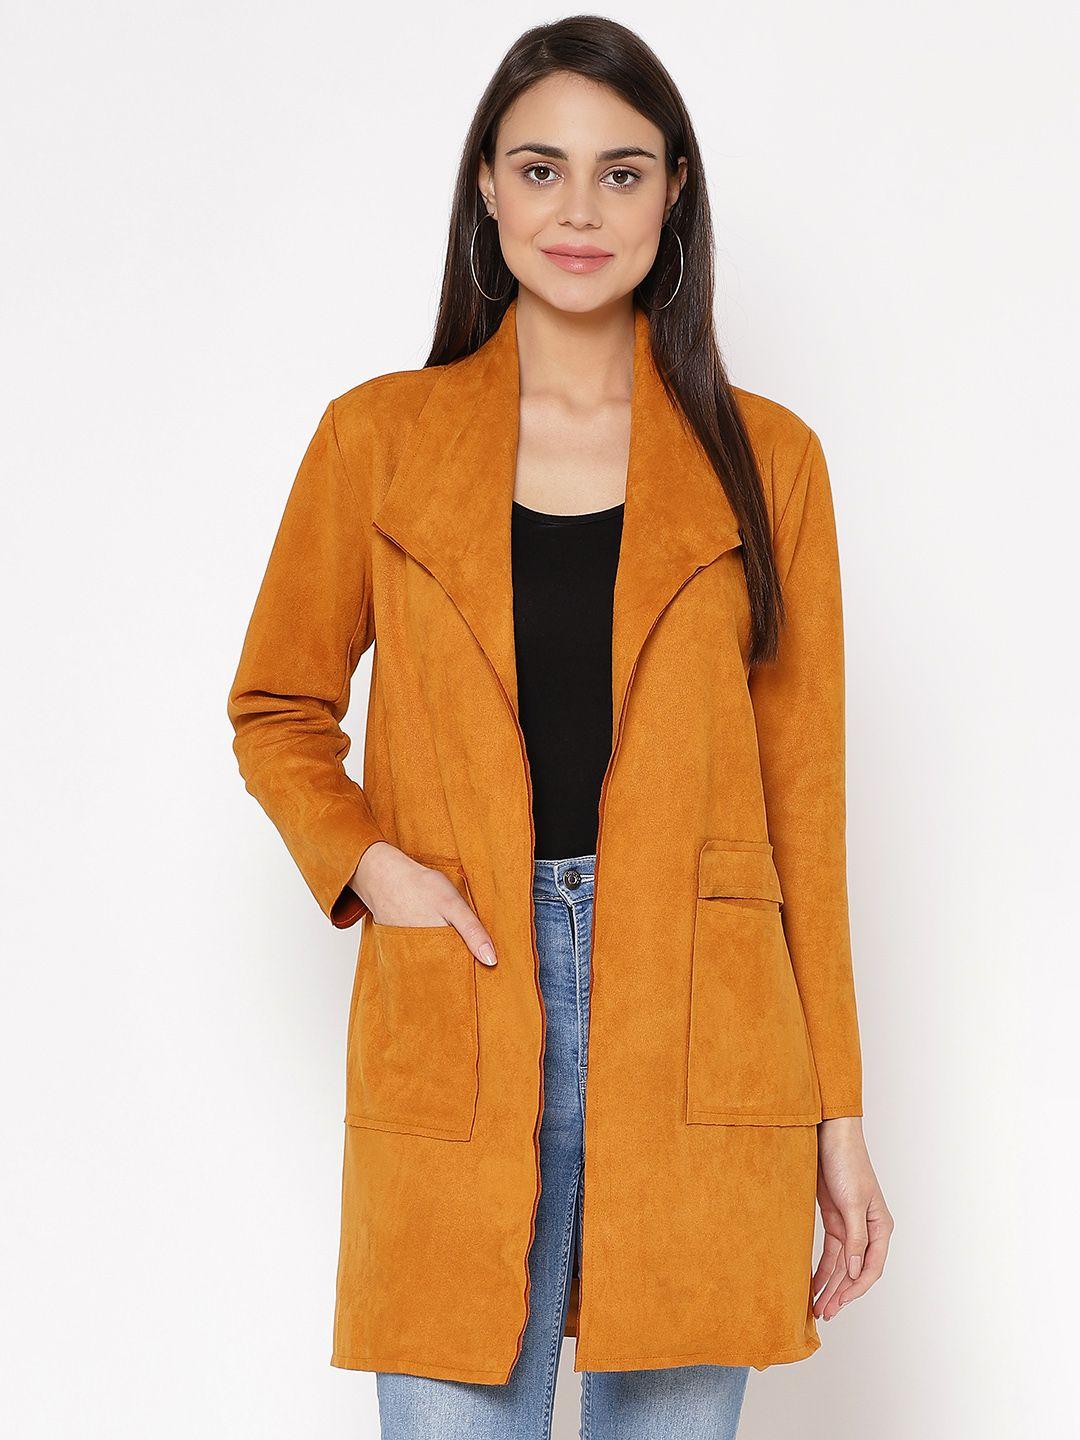 carlton london women mustard yellow suede solid open front longline jacket